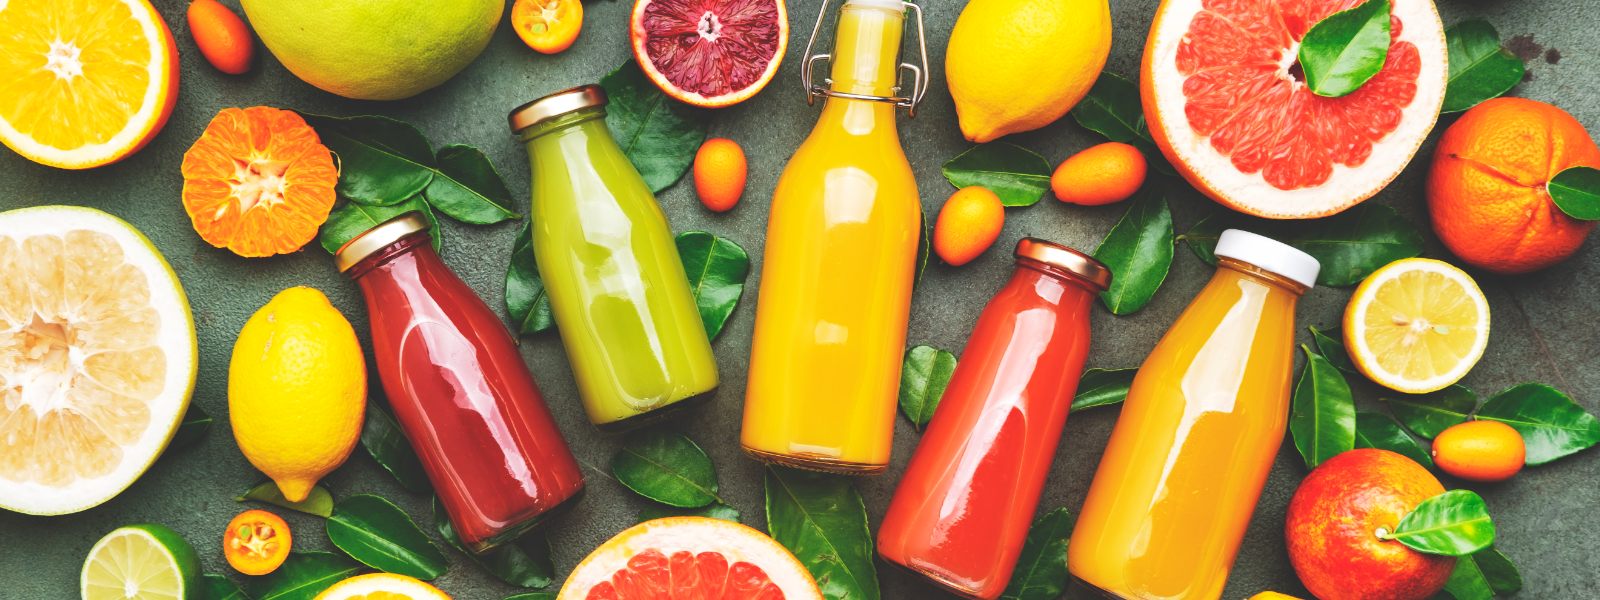 ERAHOOLDUS OÜ - juices, natural juices, orange juice, multi-juice, mixed juice, grape juice, apple juice, tropical juice,...